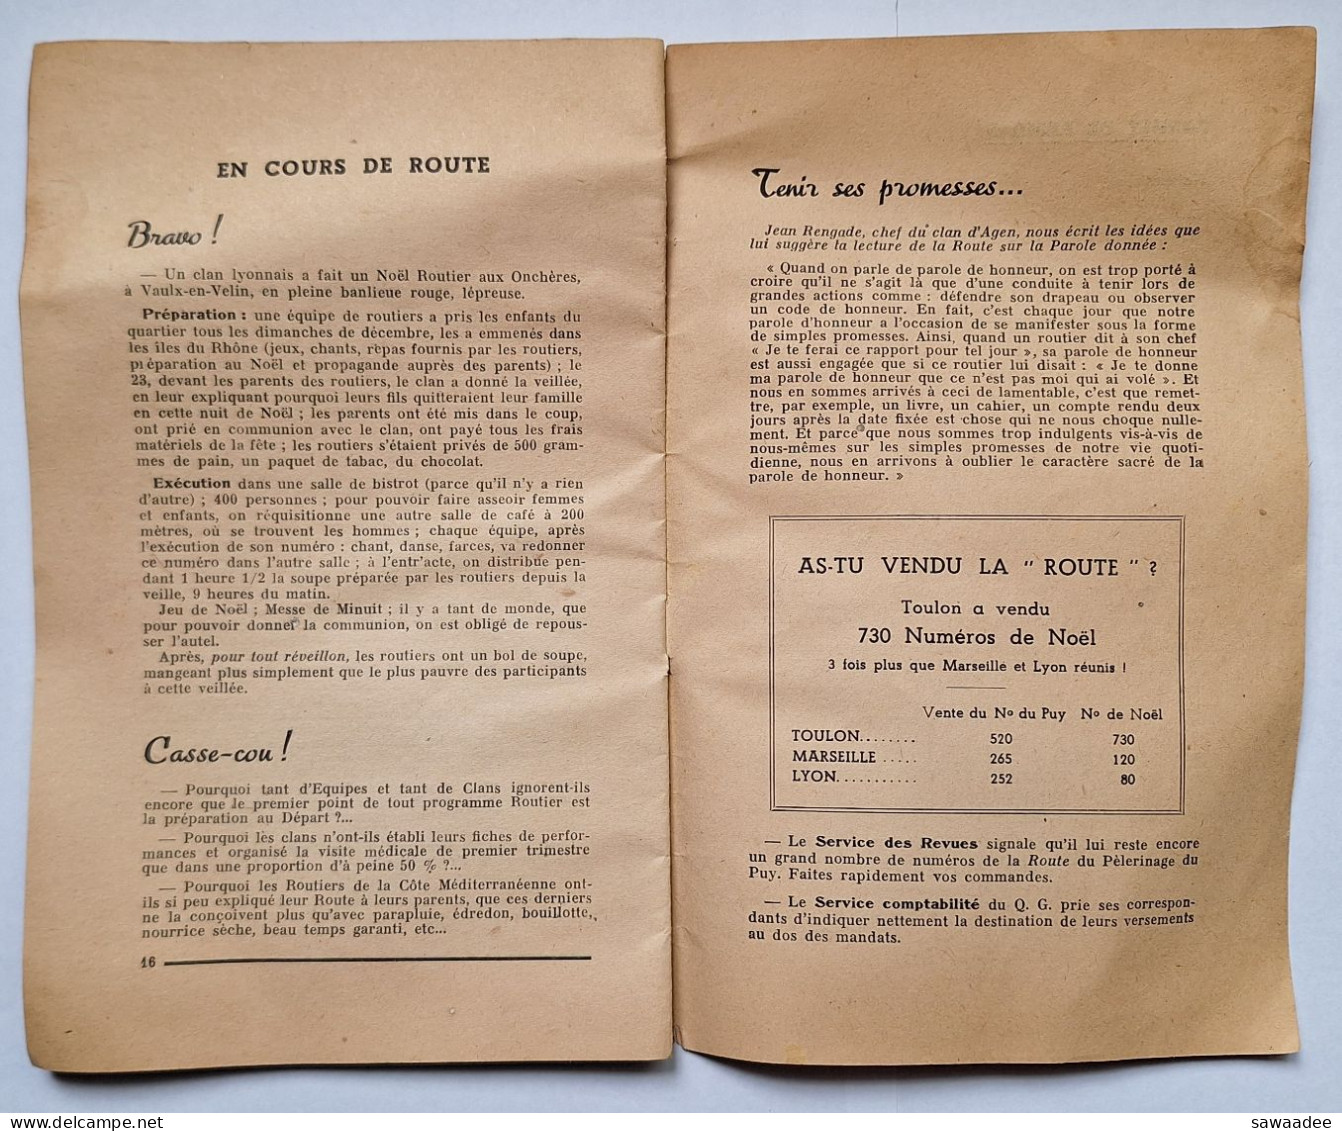 SCOUTISME - FRANCE - LIVRET - LA ROUTE DES COUTS DE FRANCE - TA VOCATION V - 01/03/1943 - 16 PAGES - Scoutisme